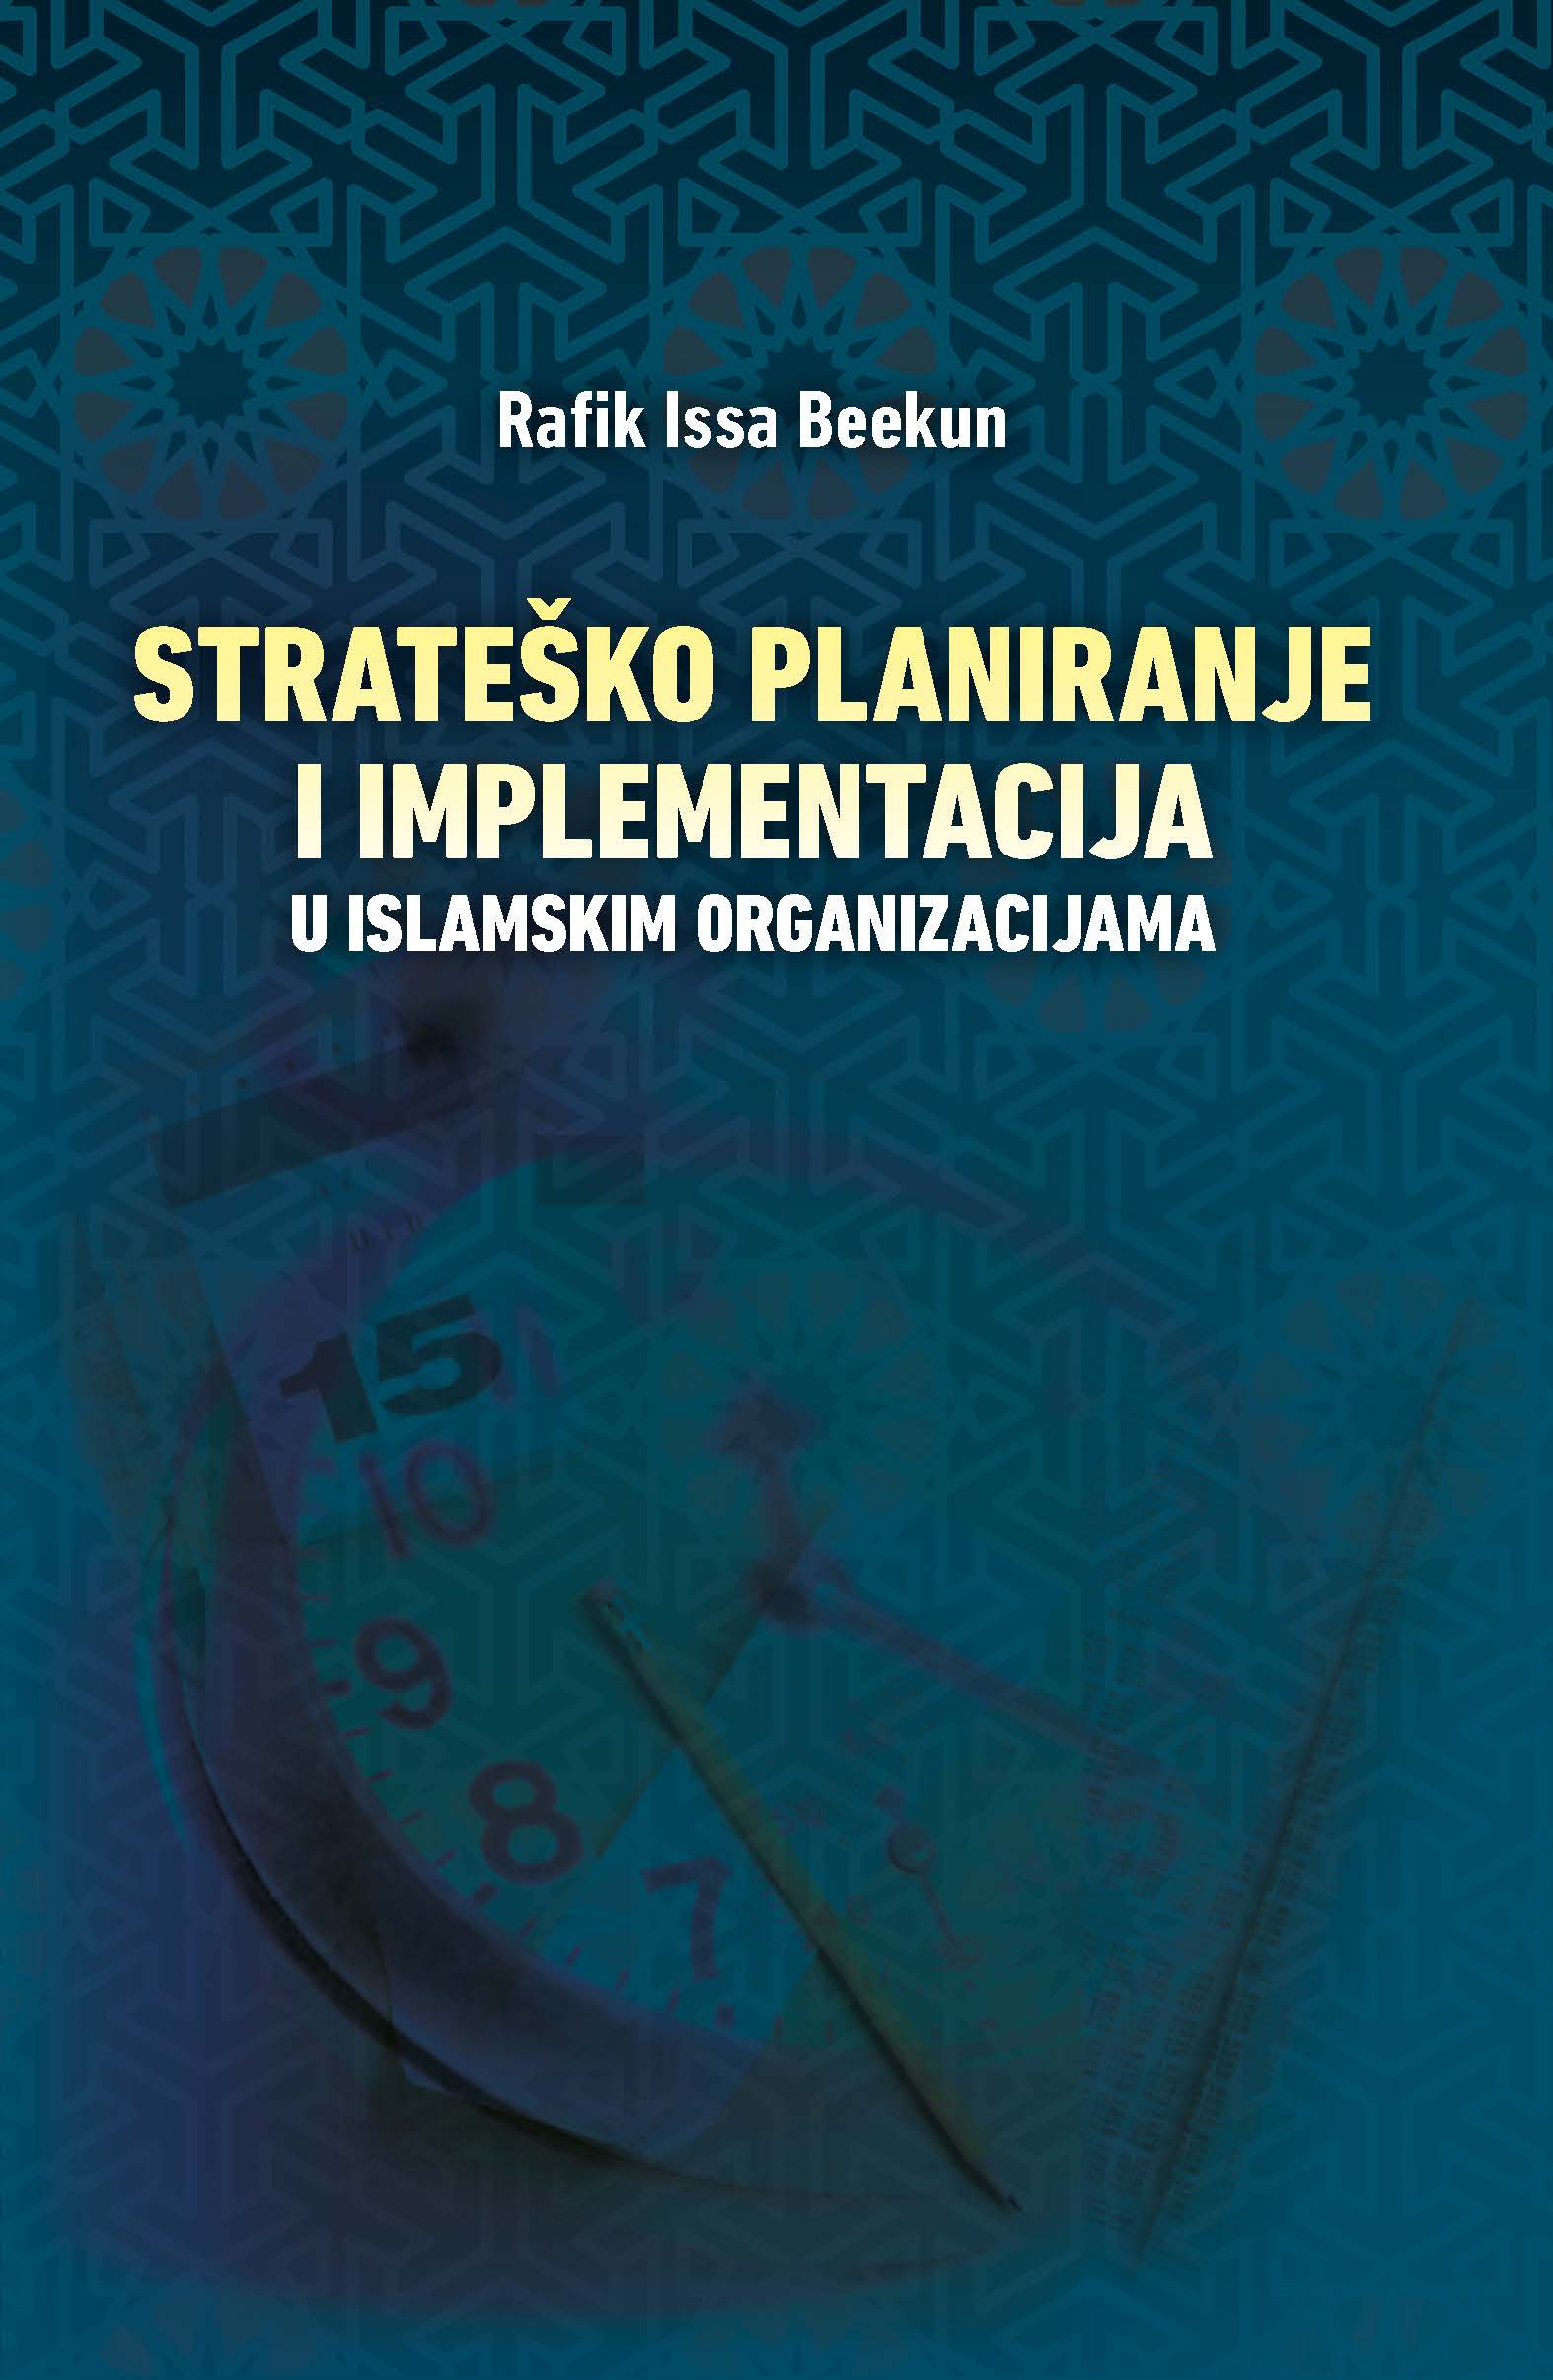 (Bosnian Language) STRATEŠKO PLANIRANJE I IMPLEMENTACIJA U ISLAMSKIM ORGANIZACIJAMA (Strategic Planning and Implementation for Islamic Organization)